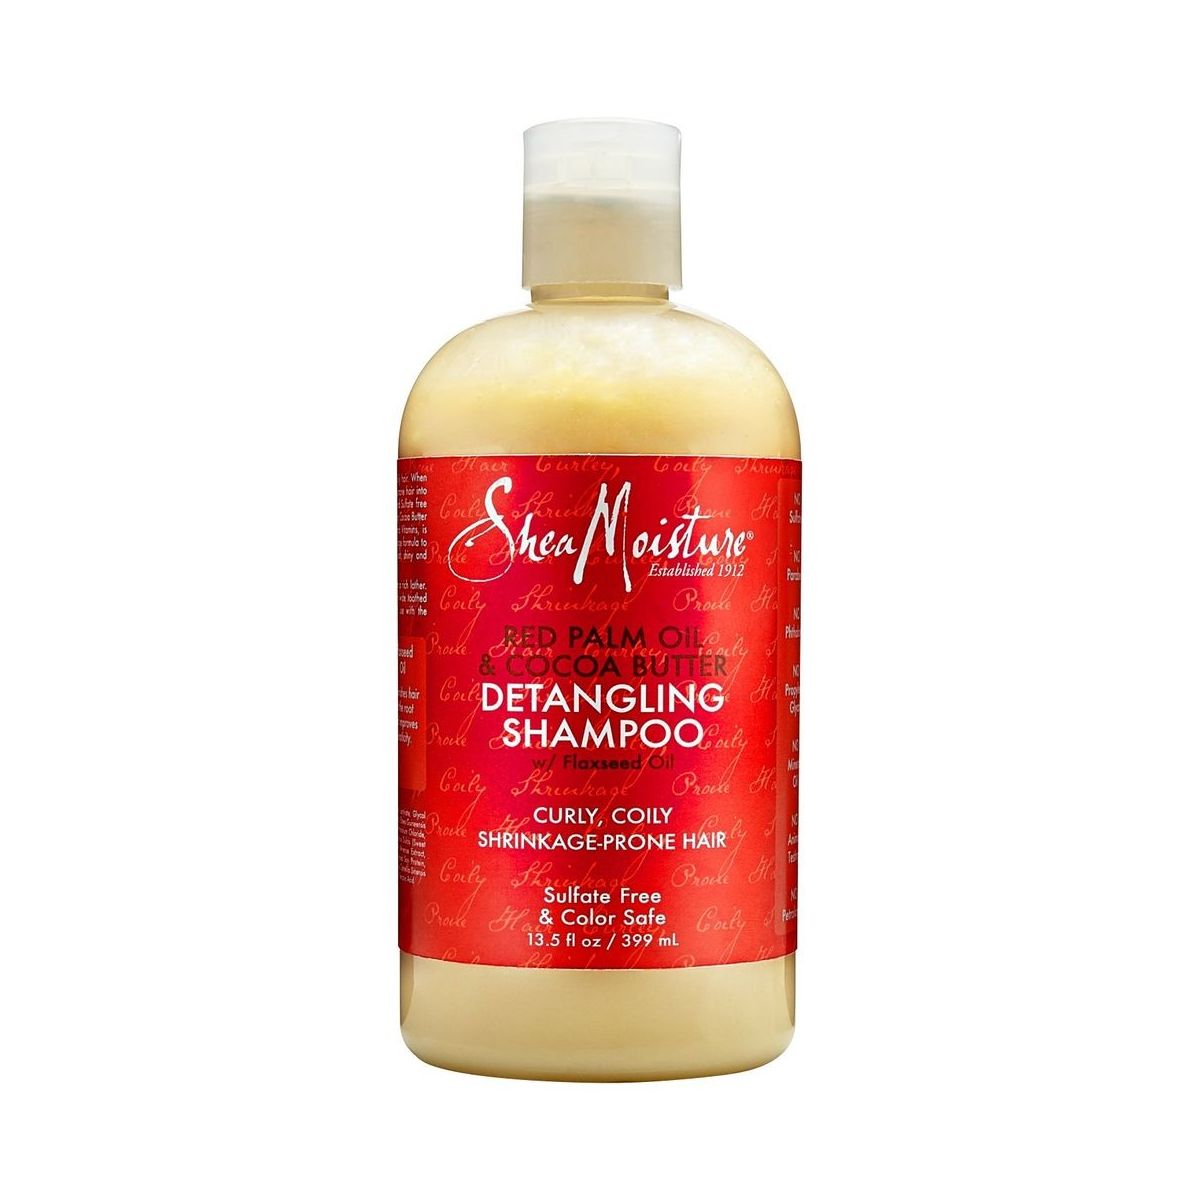 Shampoo shea moisture Top 10